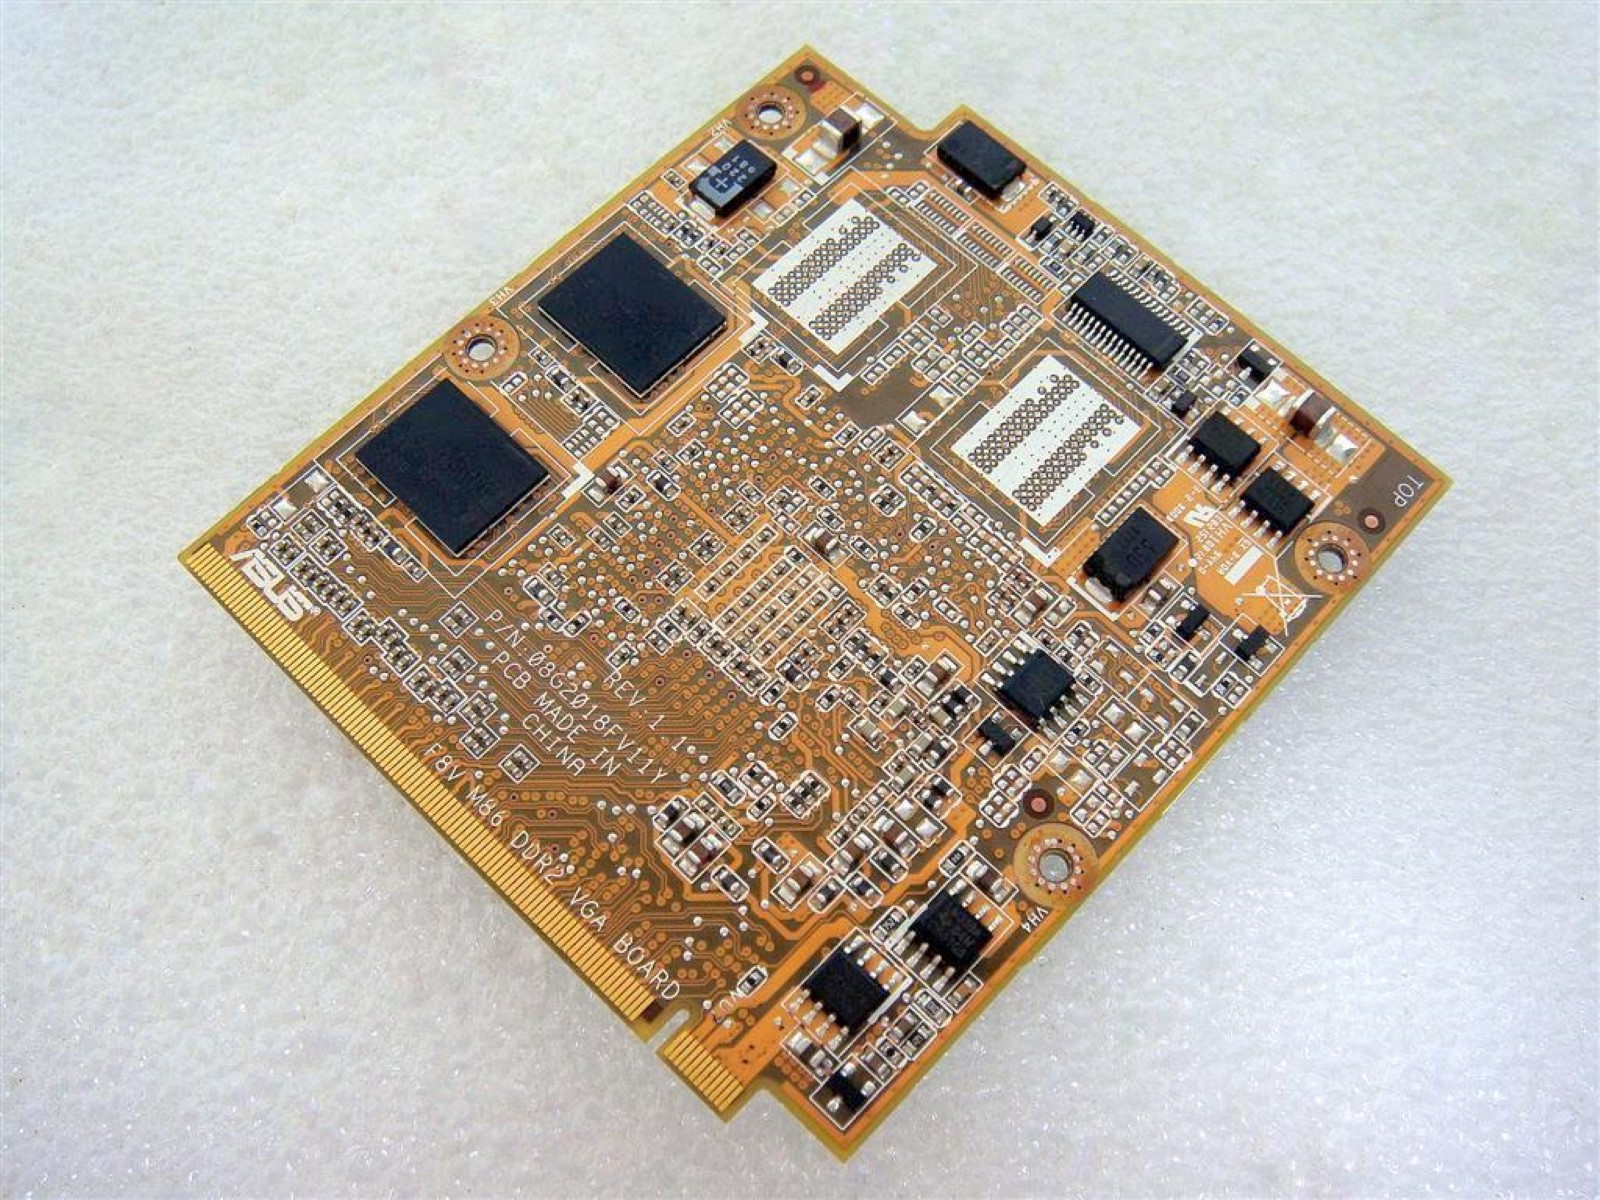 Asus HD3470 MXM Card